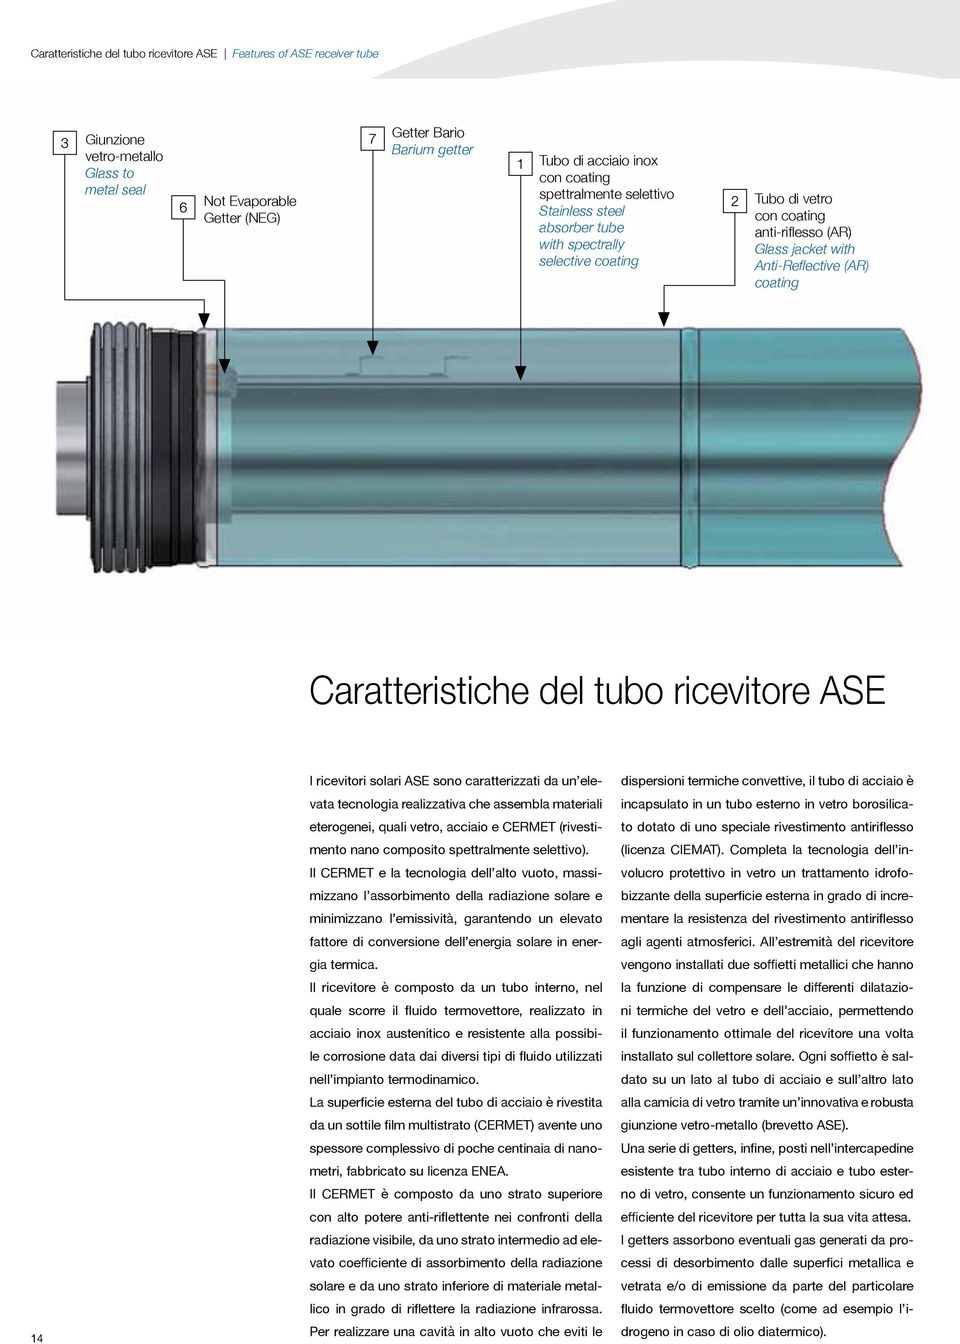 Caratteristiche del tubo ricevitore ASE 14 I ricevitori solari ASE sono caratterizzati da un elevata tecnologia realizzativa che assembla materiali eterogenei, quali vetro, acciaio e CERMET